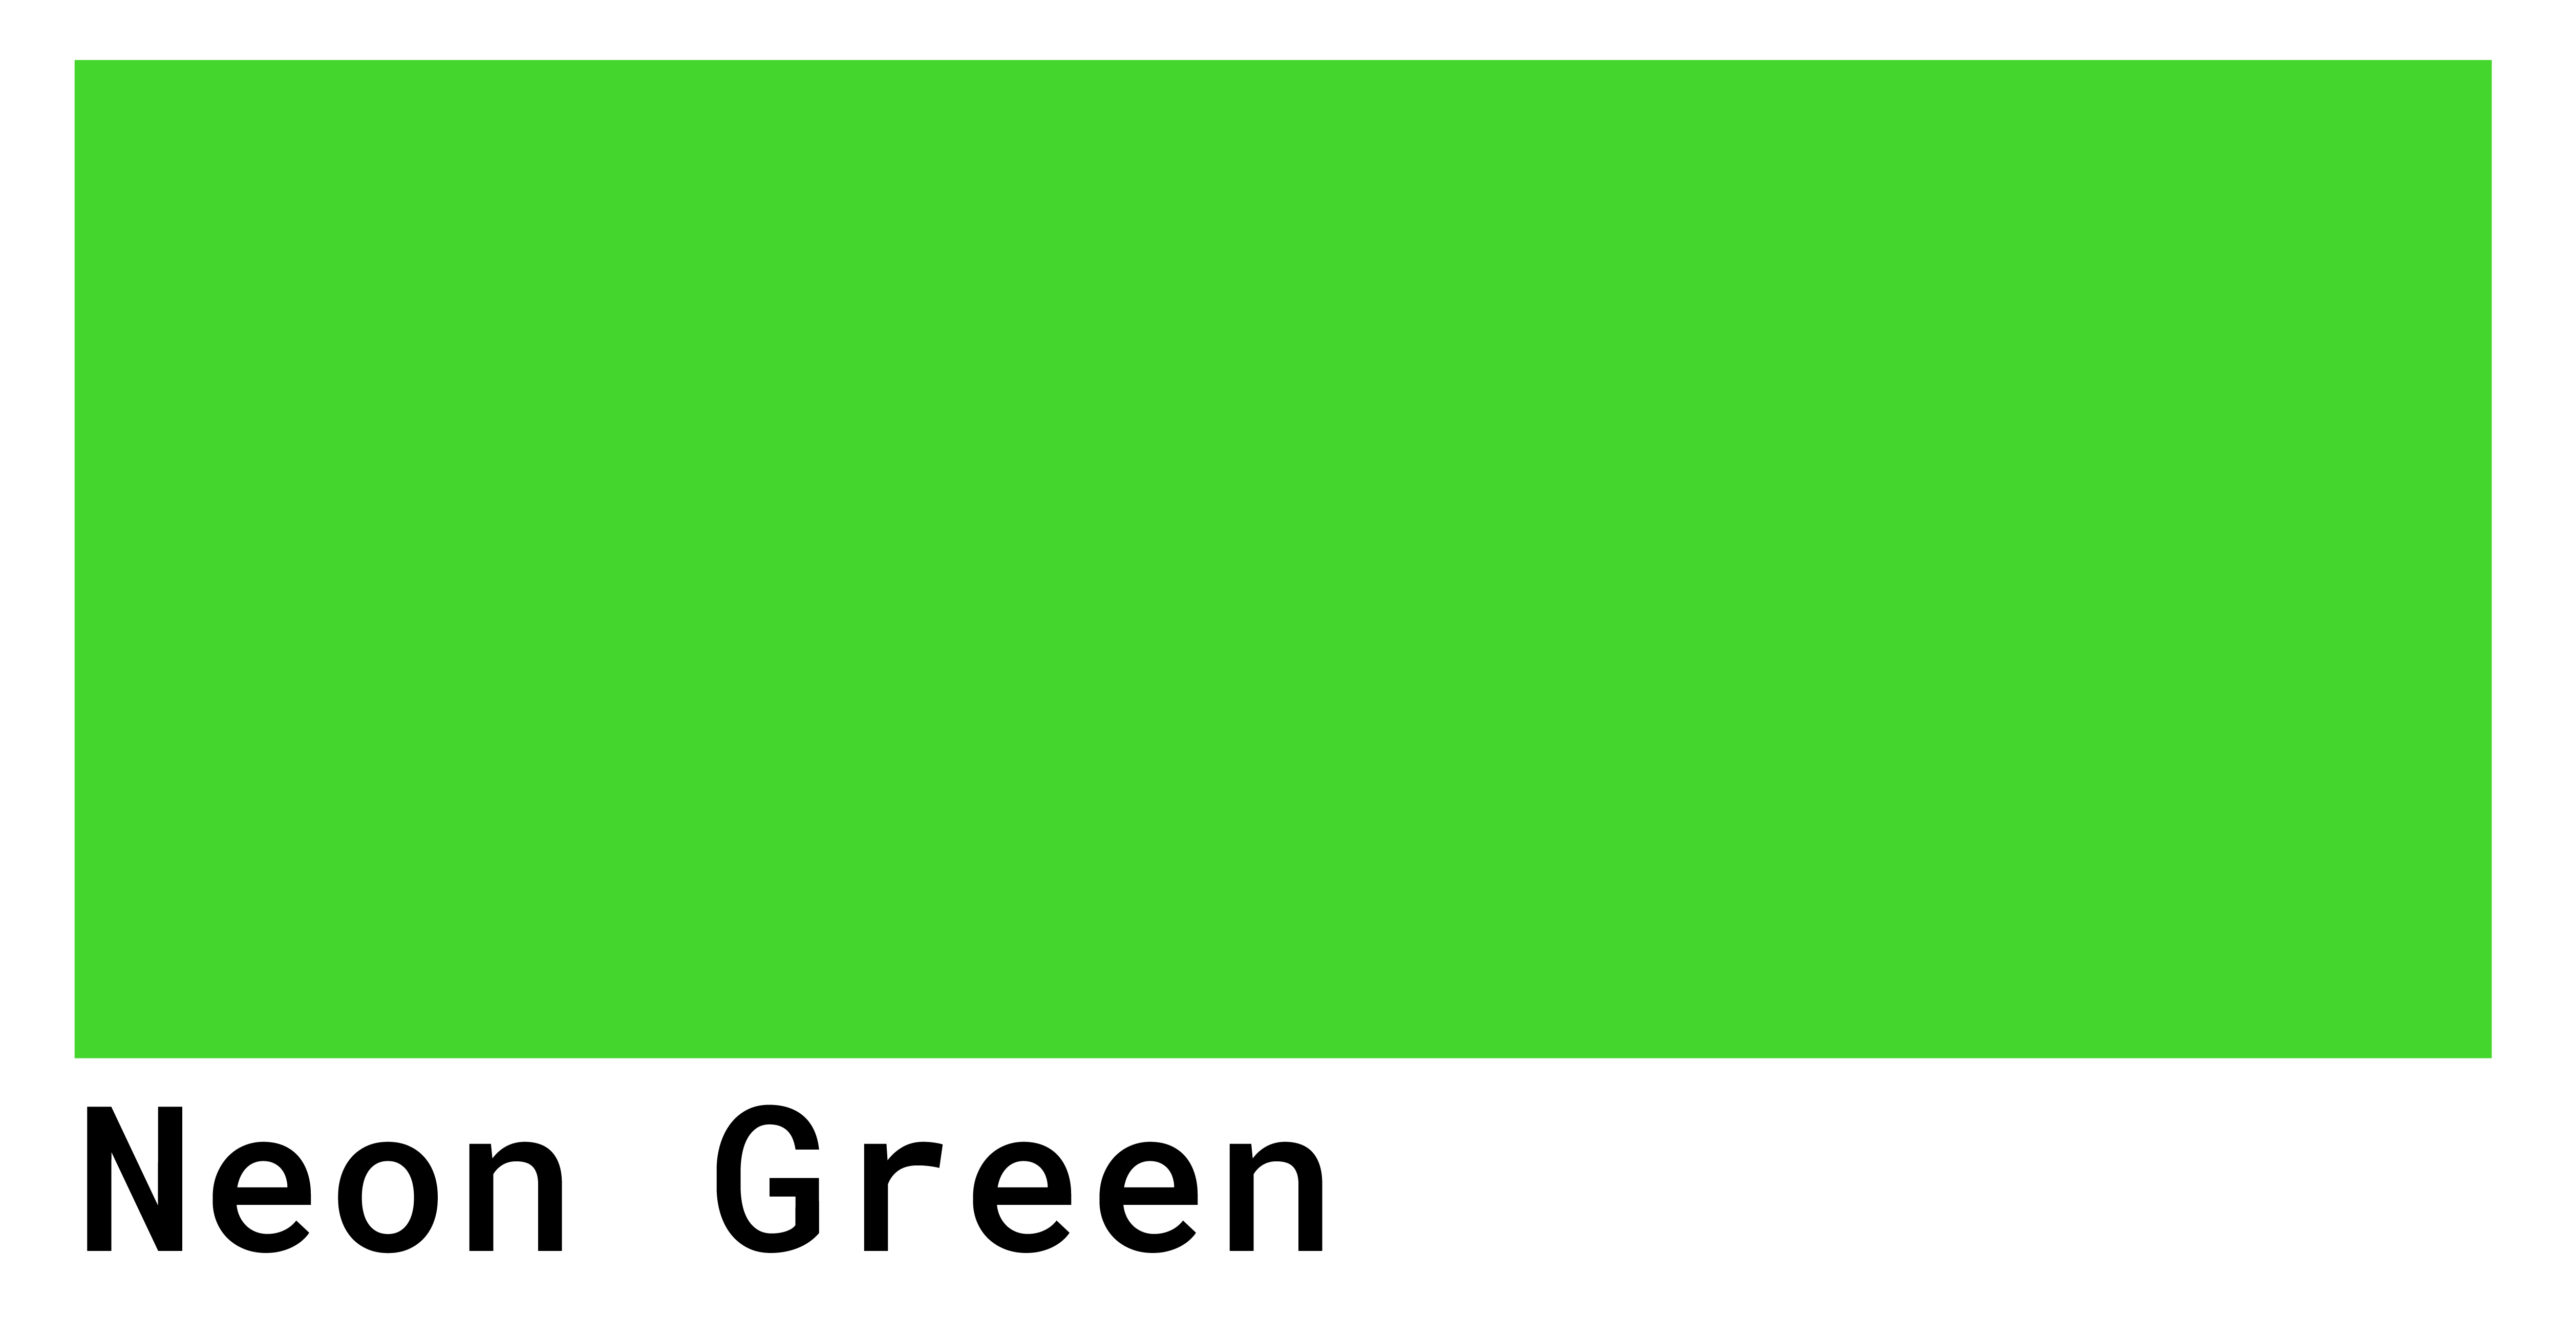 Оттенки зеленого обретают сексуальность